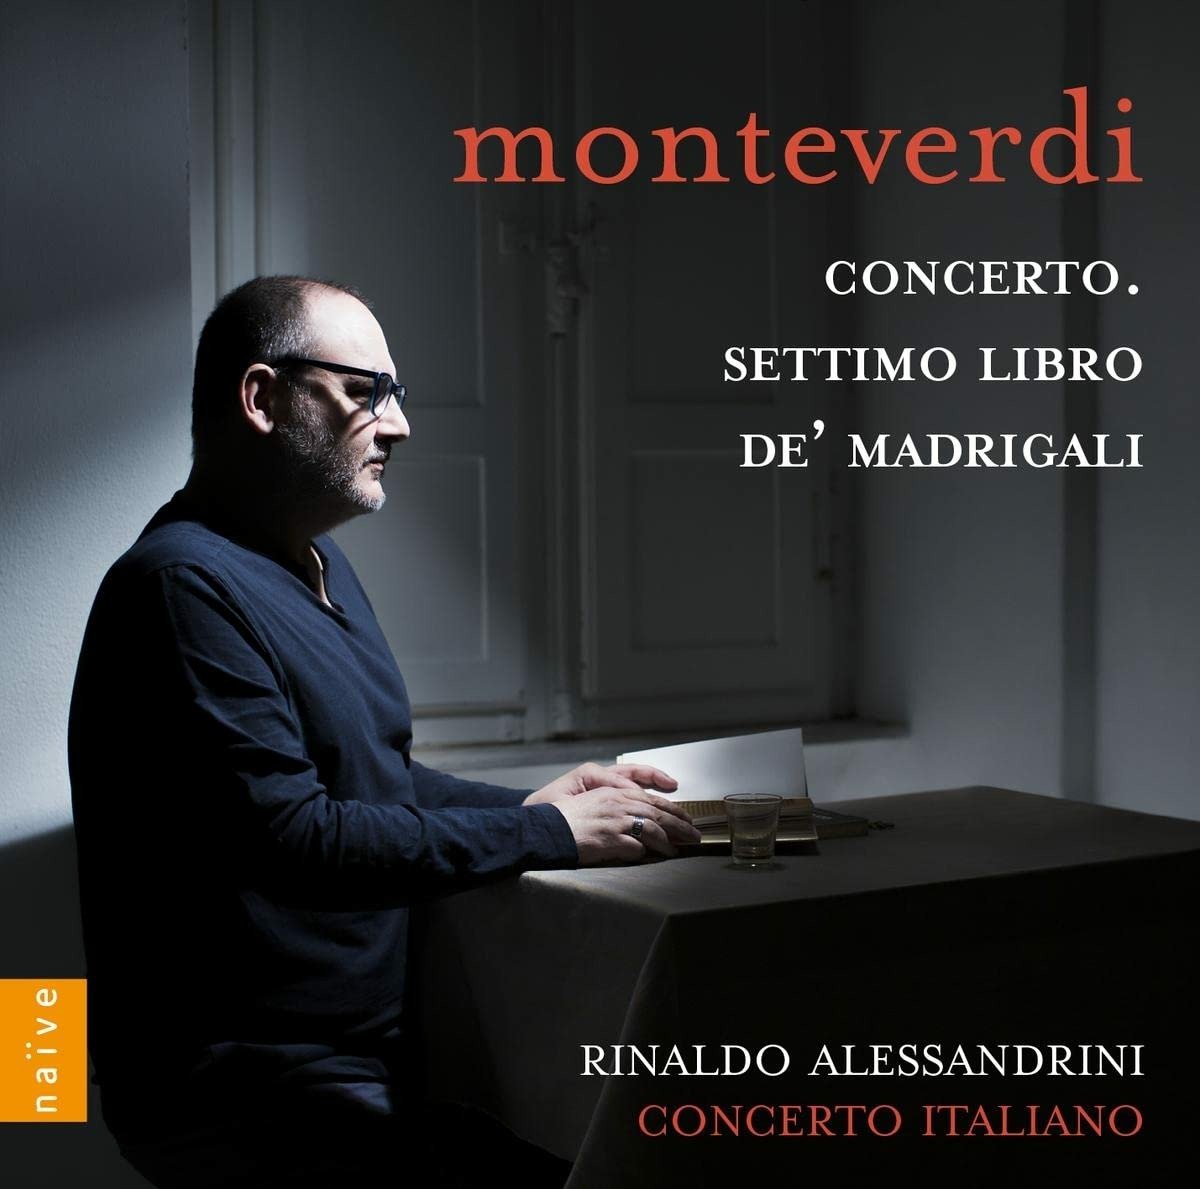 CD Shop - CONCERTO ITALIANO / RINALDO ALESSANDRINI MONTEVERDI CONCERTO & SETTIMO LIBRO DE MADRIGALI